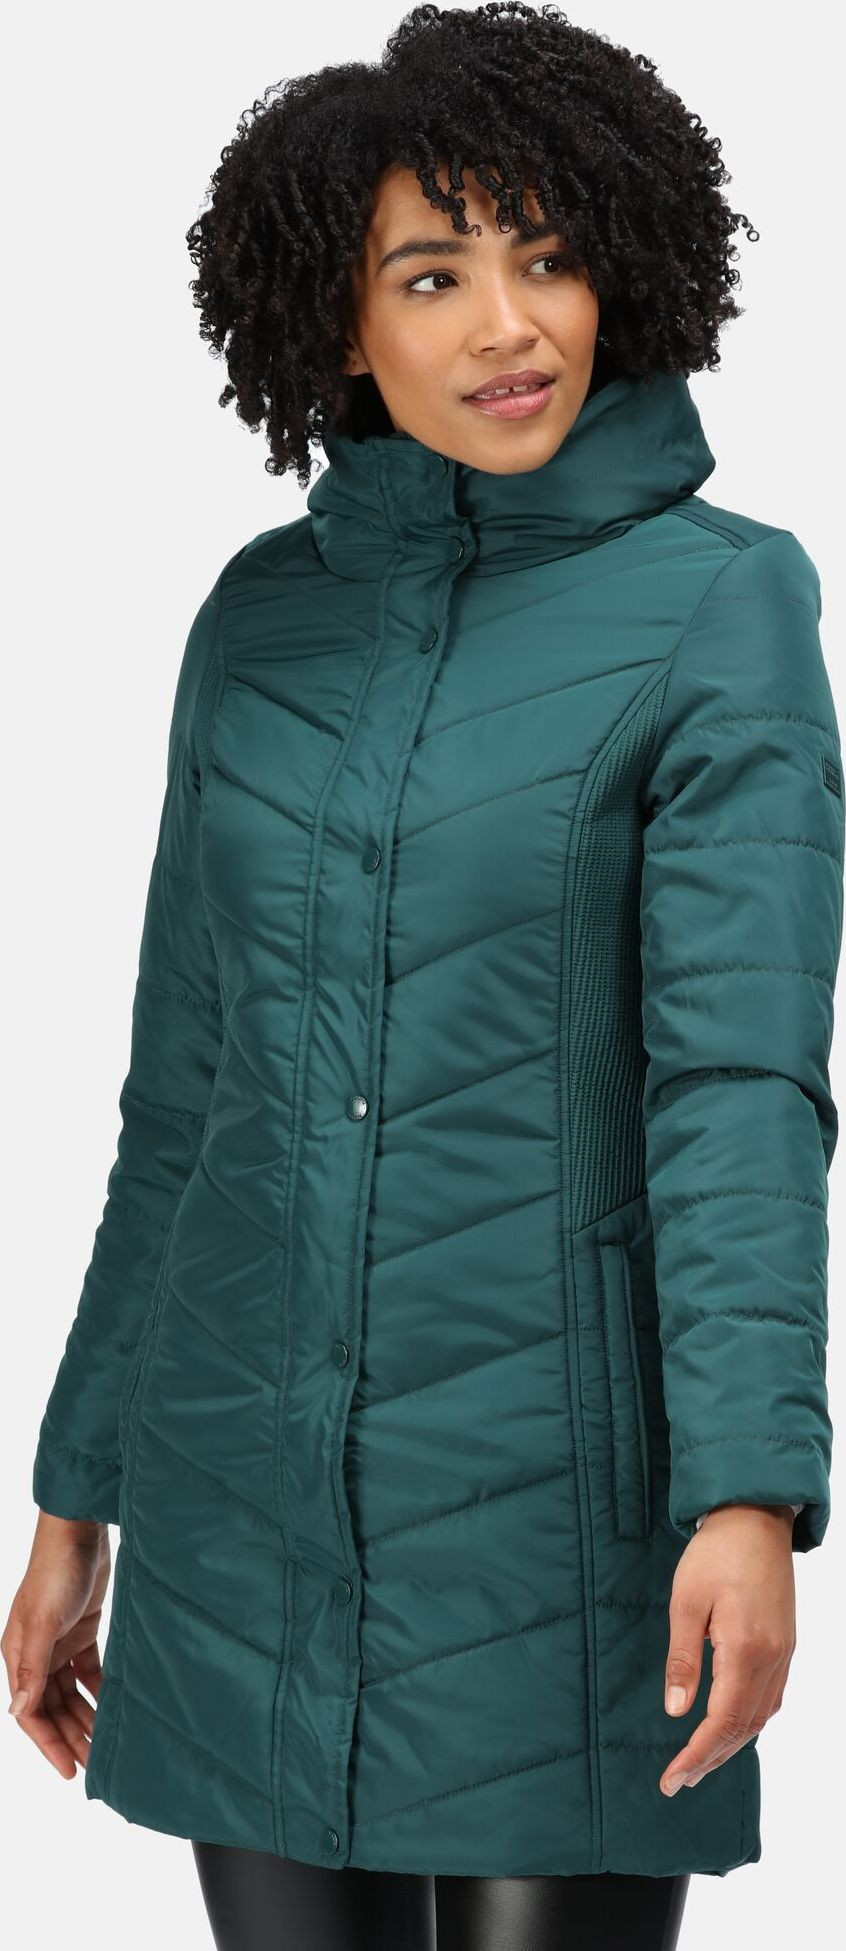 Dámský zimní kabát Regatta RWN186 Parthenia 3EB zelený - Regatta XS-34 Zelená